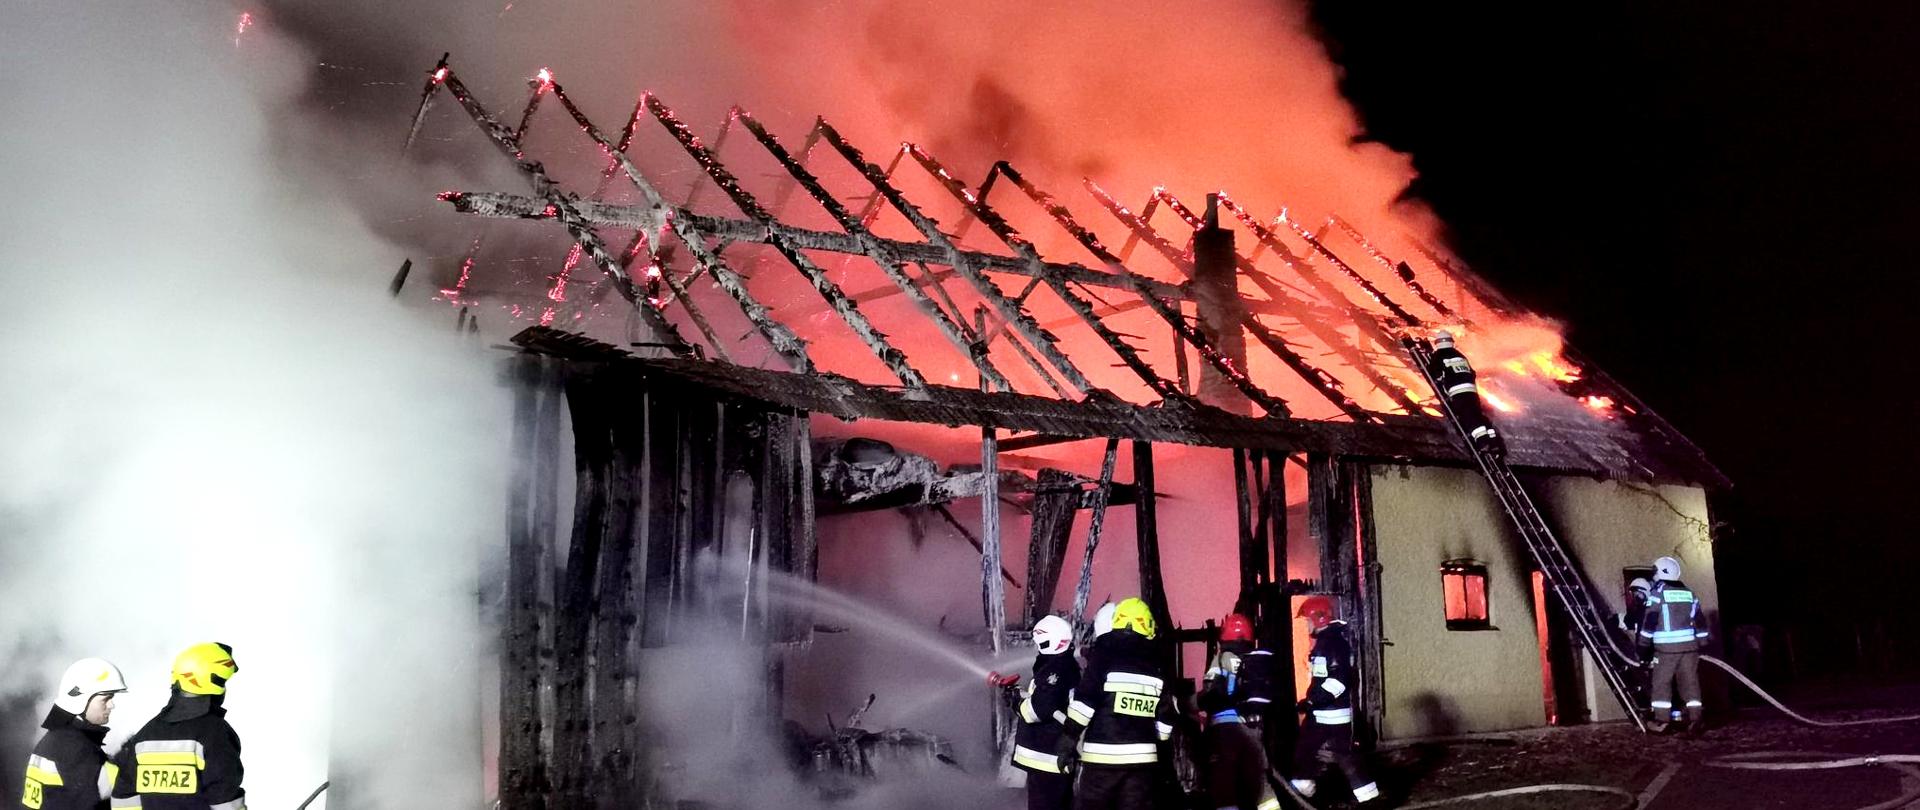 Zdjęcie przedstawia strażaków prowadzących akcję gaszenia pożaru stodoły. Nad całkowicie spalonym dachem widoczne są kłęby gęstego białego dymu, rozświetlone w prawej części fotografii, czerwoną łuną od płomieni buchających ponad powierzchnię budynku. Na pierwszym planie znajdują się trzy dwuosobowe roty strażaków gaszących płonący budynek, w tym jedna rota pracuje z wykorzystaniem drabiny przystawionej do dachu płonącego budynku.